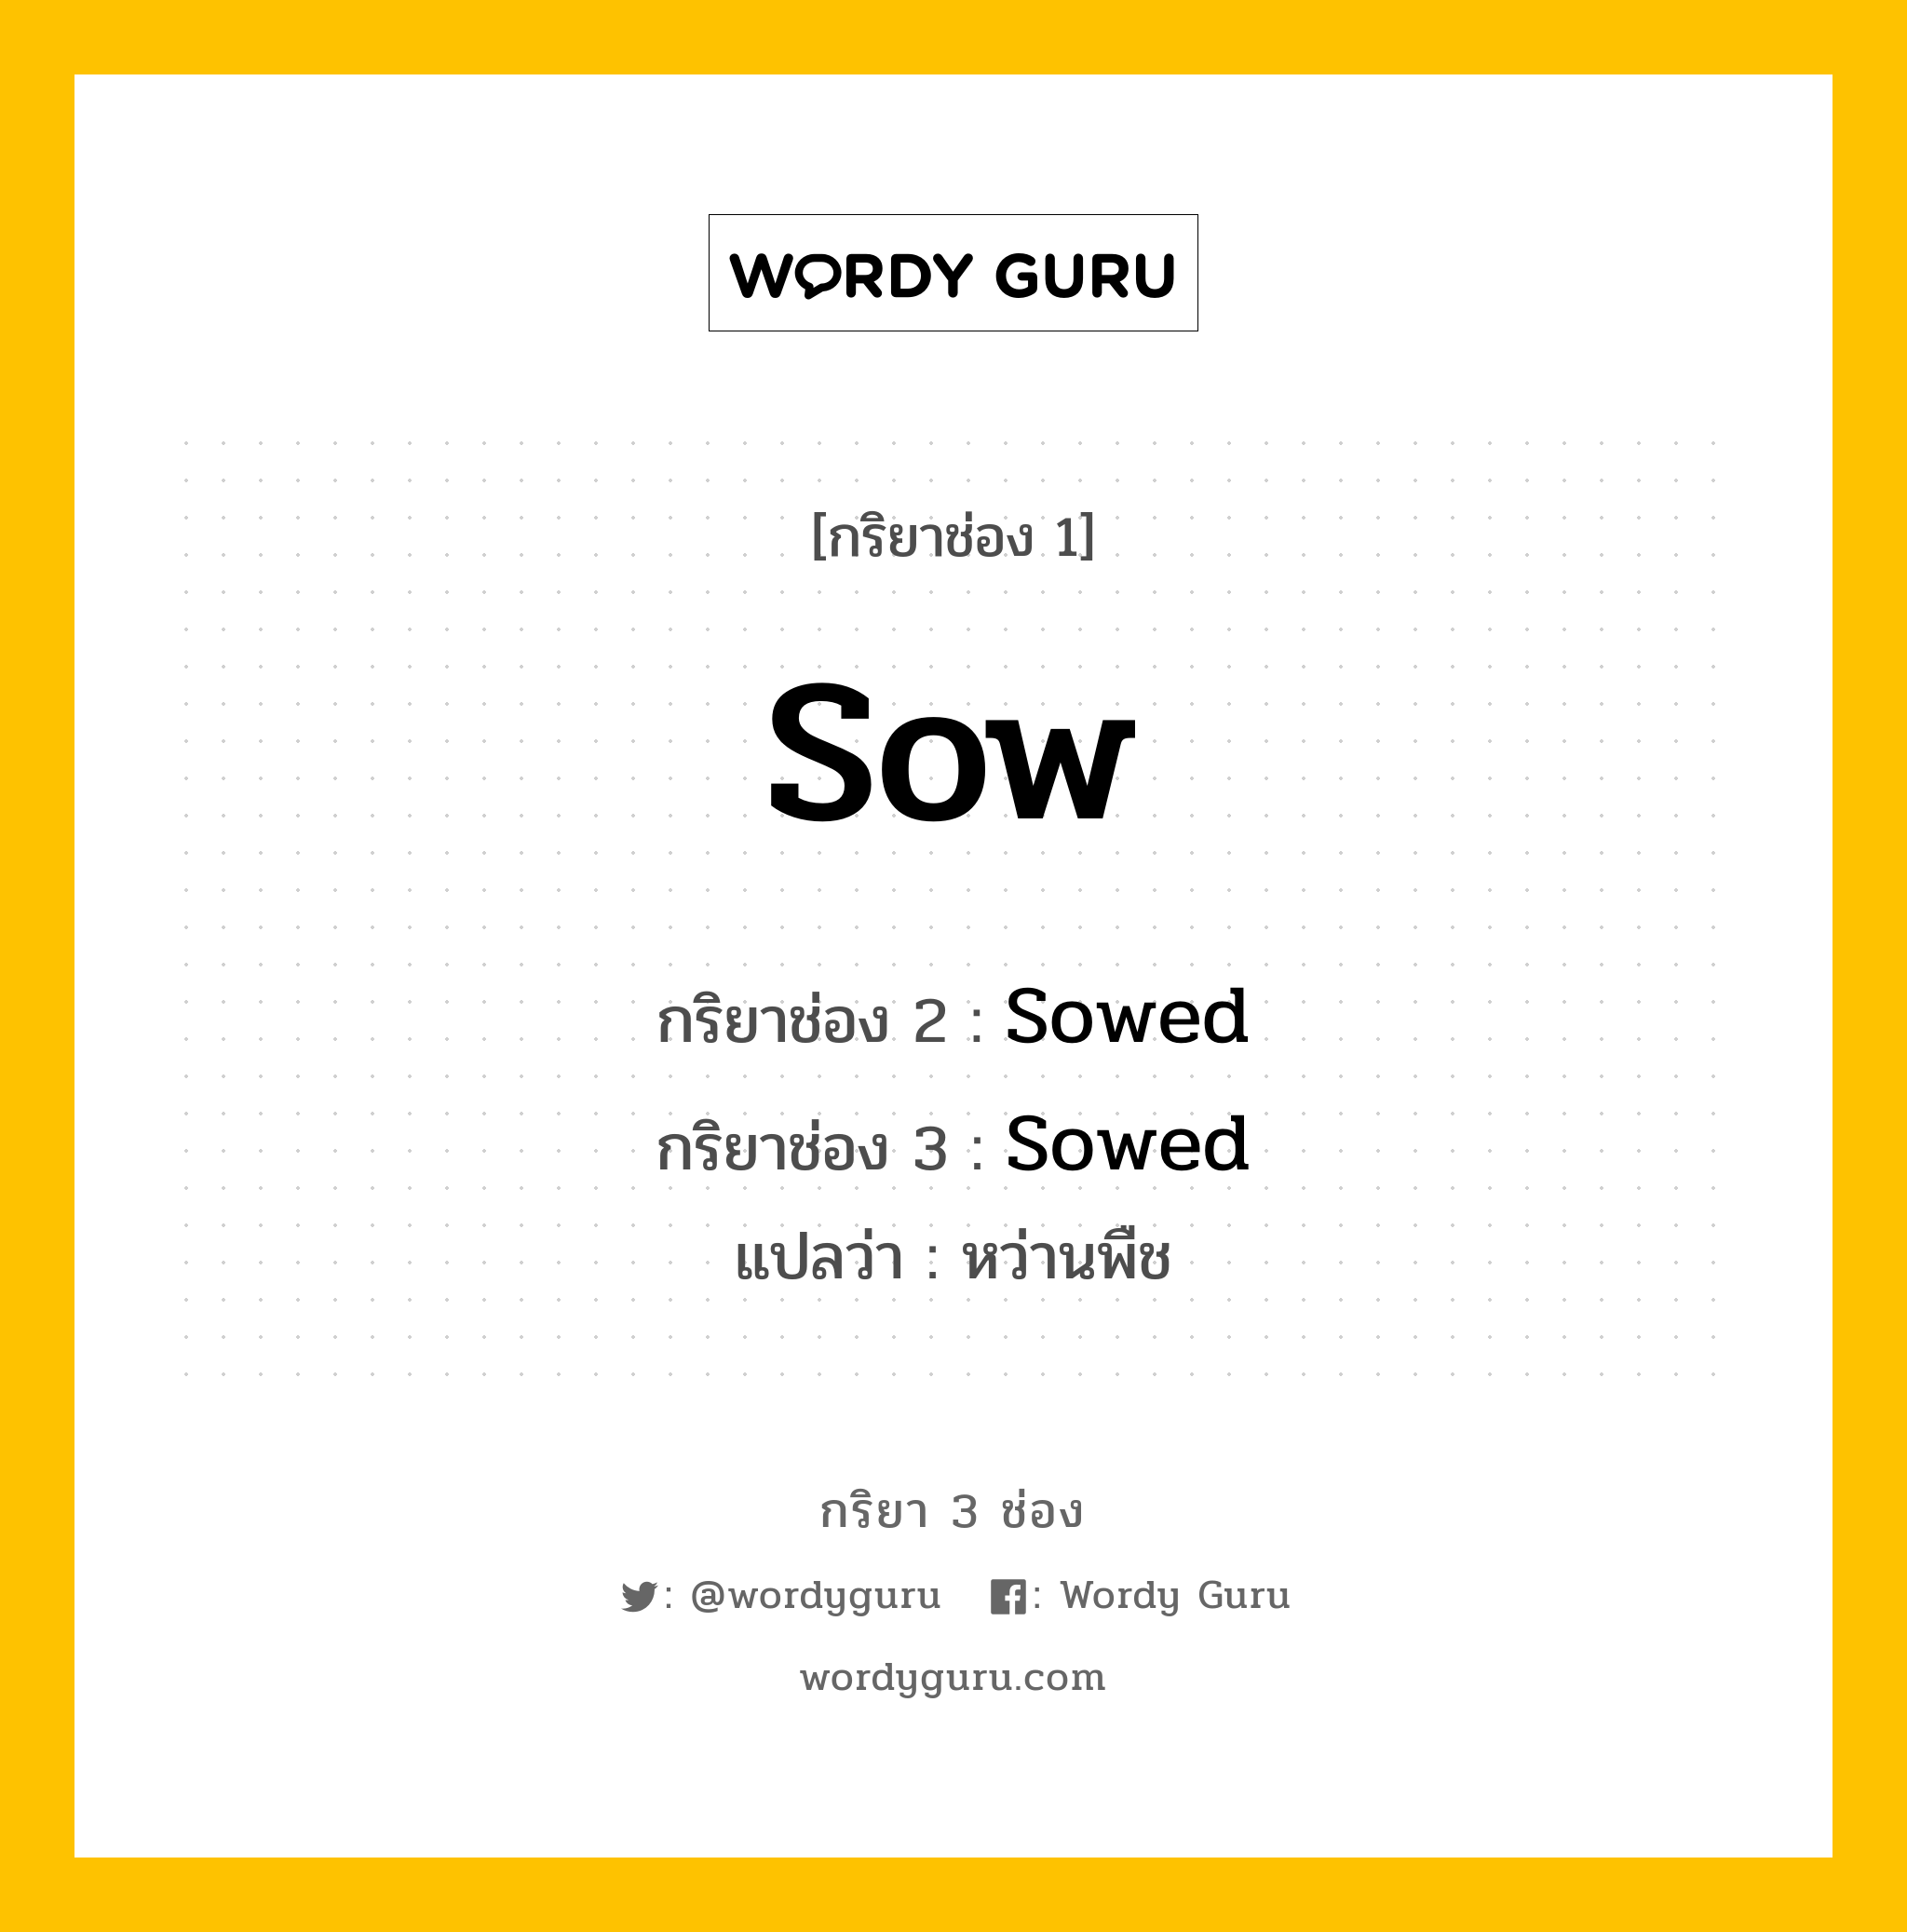 กริยา 3 ช่อง: Sow ช่อง 2 Sow ช่อง 3 คืออะไร, กริยาช่อง 1 Sow กริยาช่อง 2 Sowed กริยาช่อง 3 Sowed แปลว่า หว่านพืช มีหลายแบบ y หมวด Regular Verb